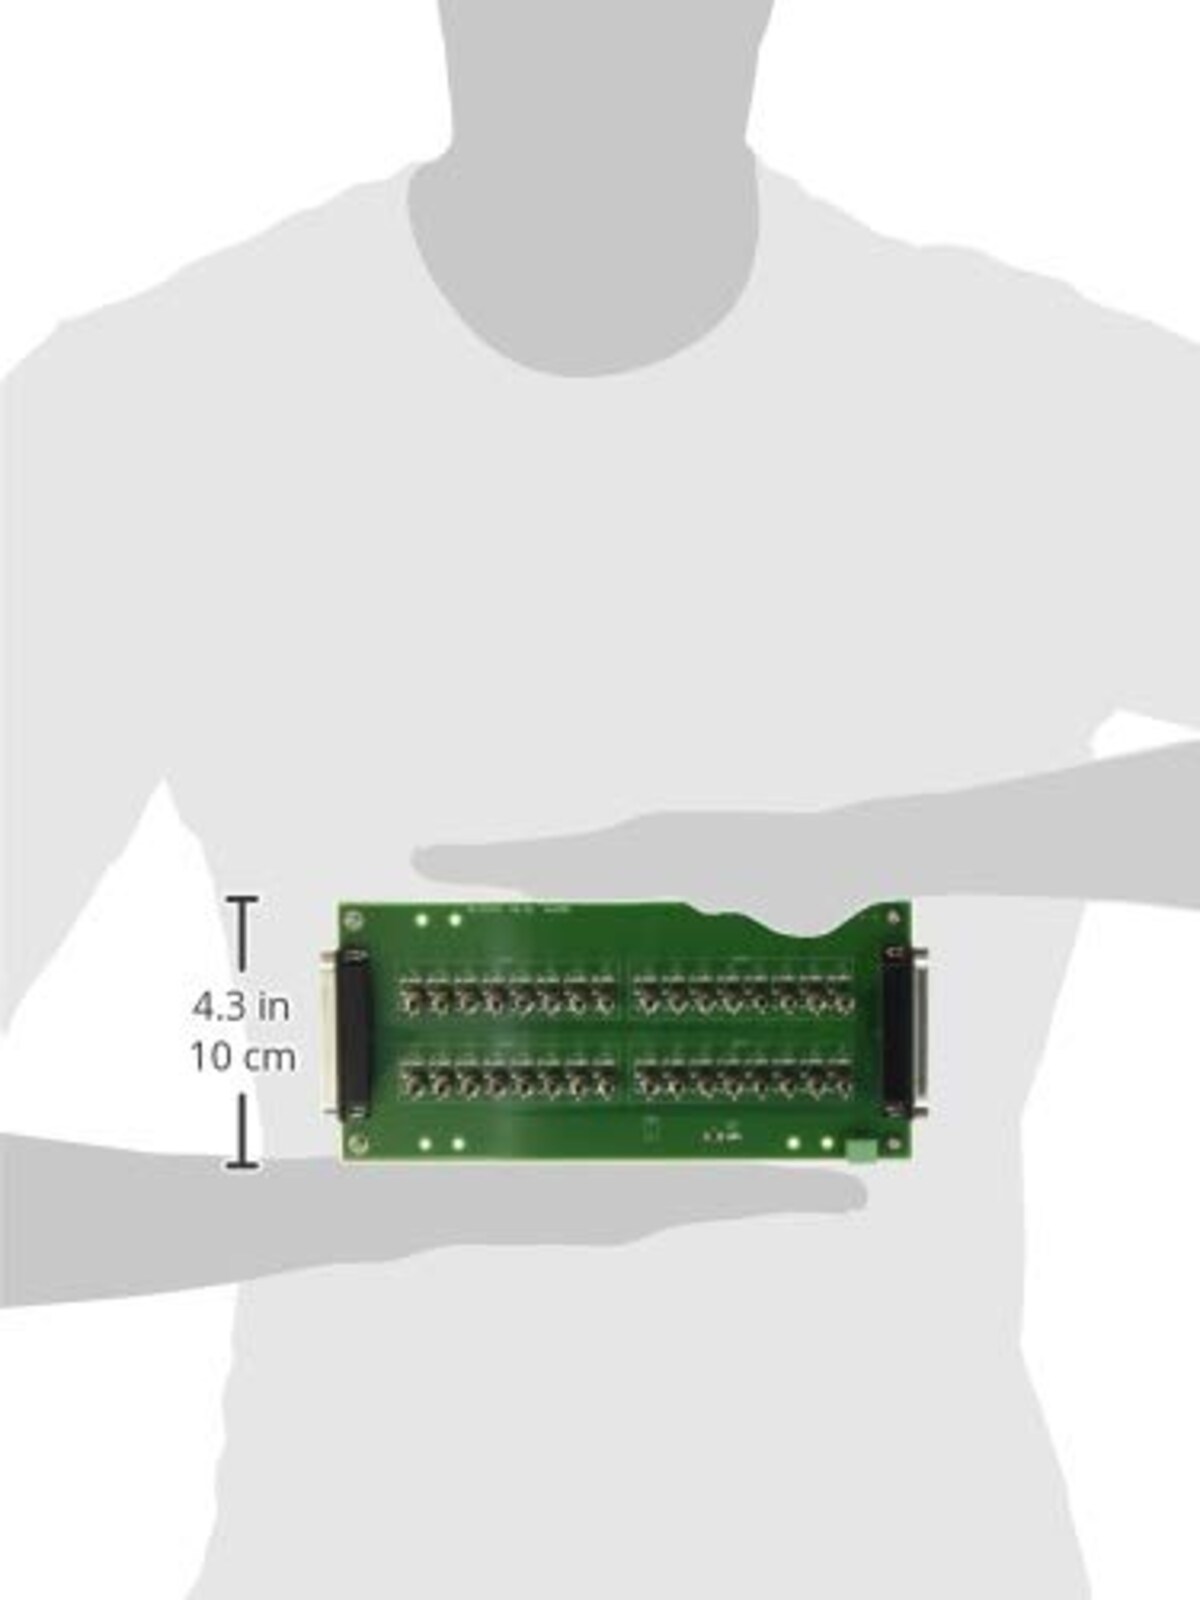  コンテック デジタル入出力信号モニタアクセサリ(32点) CM-32L画像3 